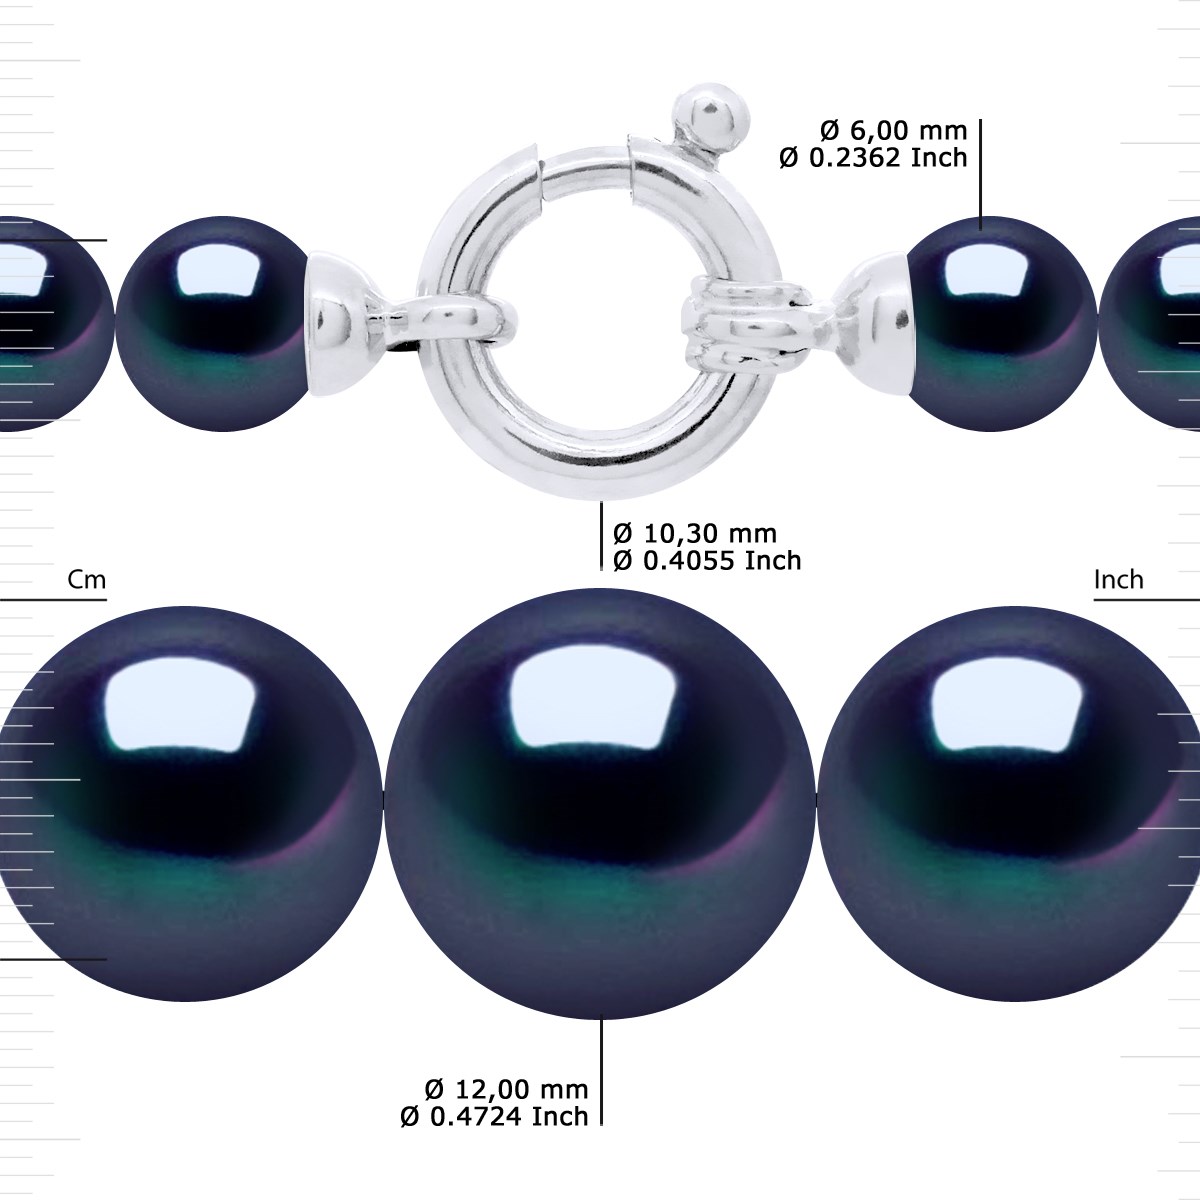 Collier Rang 'Princesse' - Véritables Perles de Culture d'Eau Douce Rondes de 12 à 6 mm - Black Tahiti - Or Blanc 750 Millièmes - vue 3